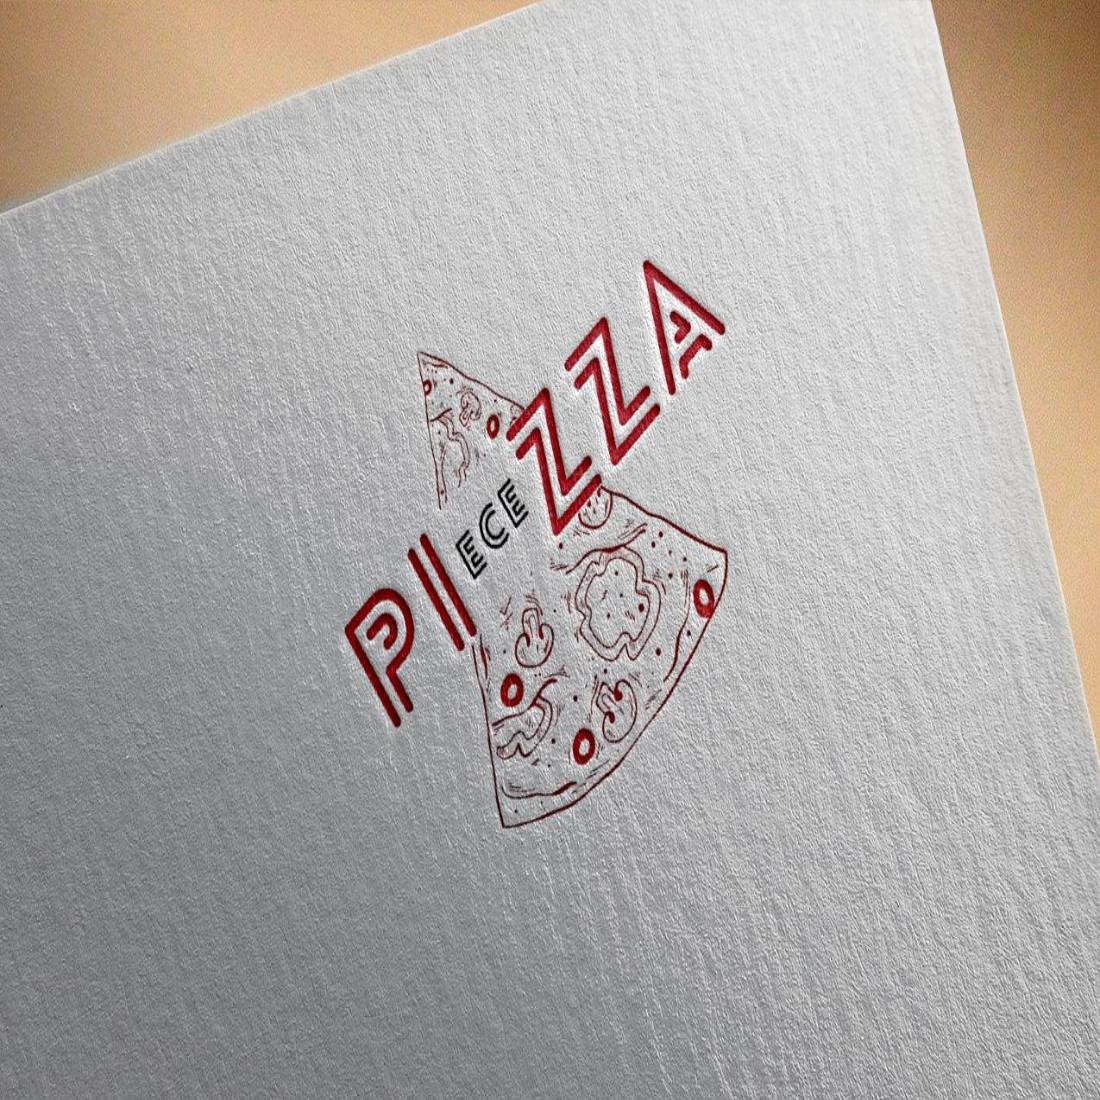 Pizza PIeceZZA Logo Design cover image.